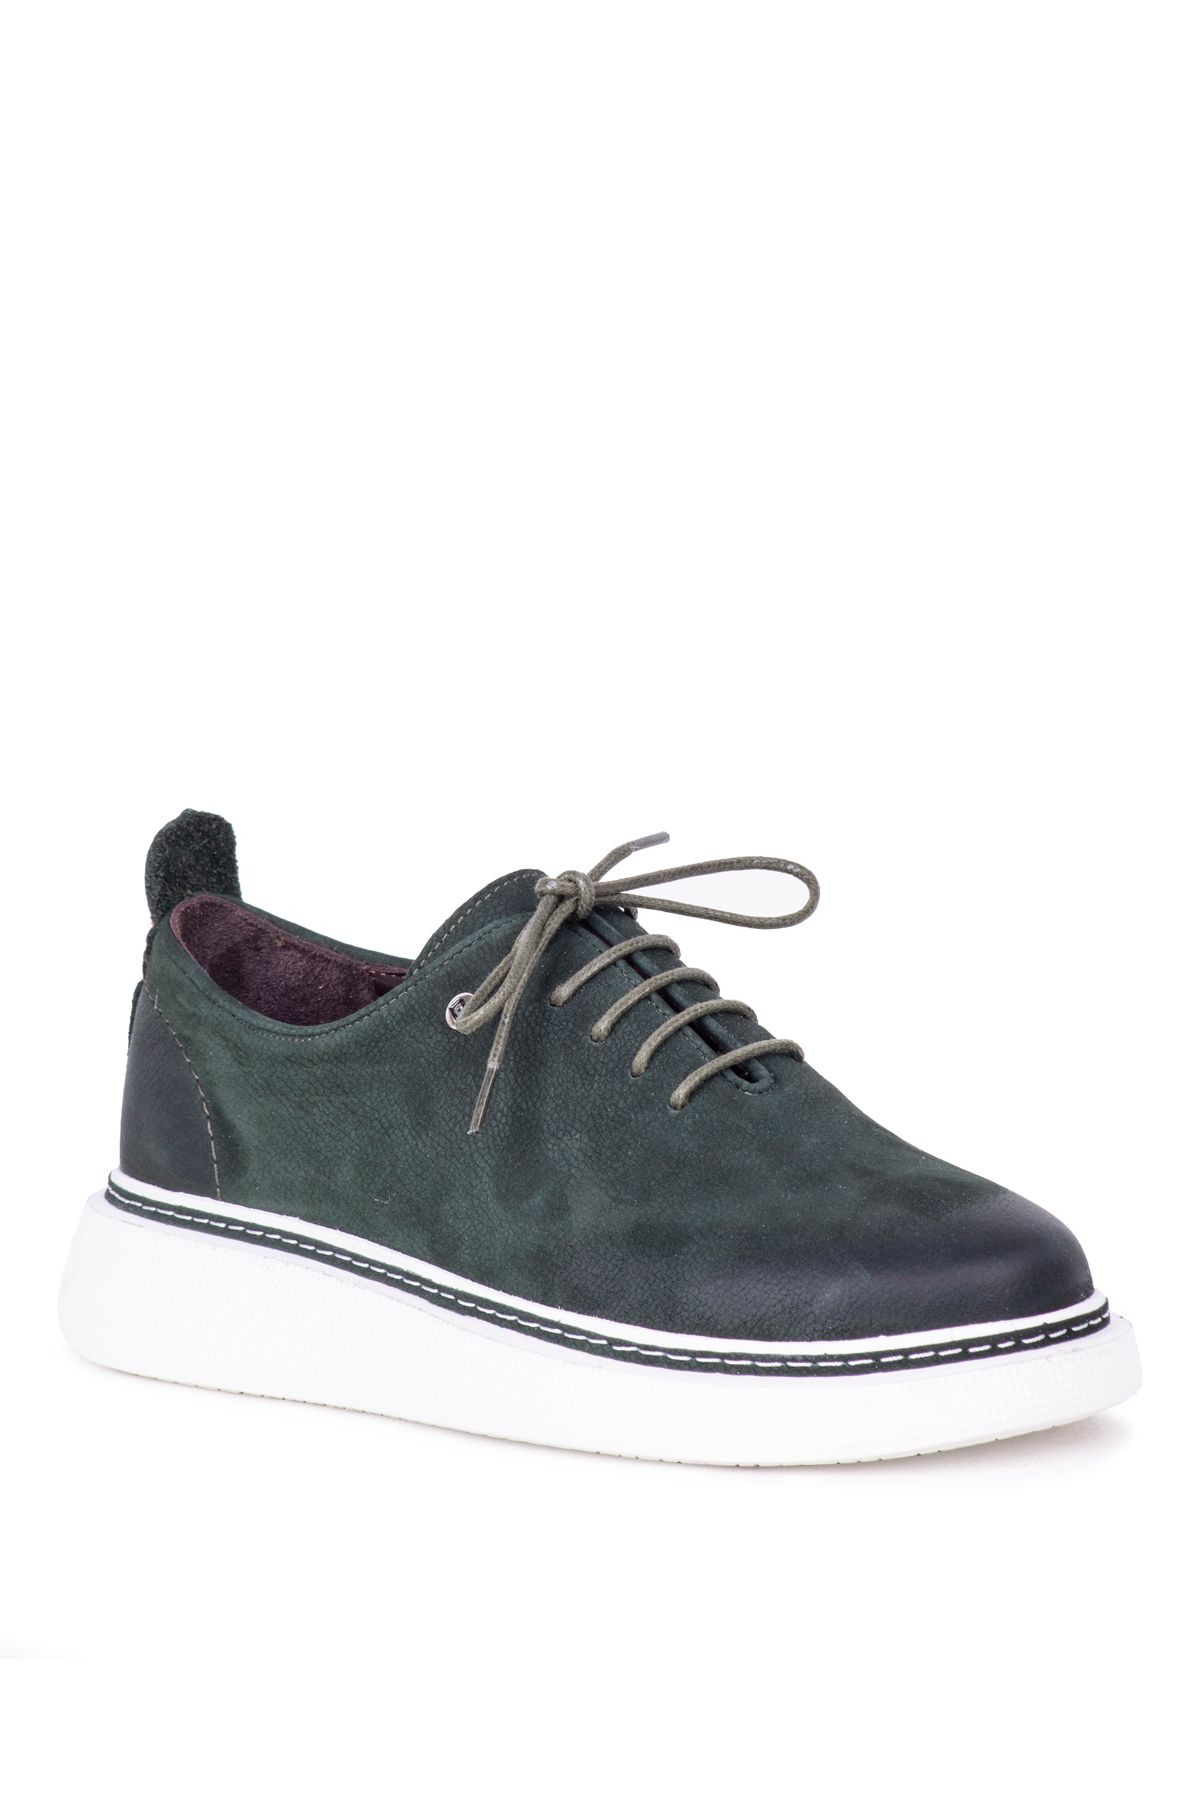 Pierre Cardin Erkek Günlük Sneaker Ayakkabı 13806